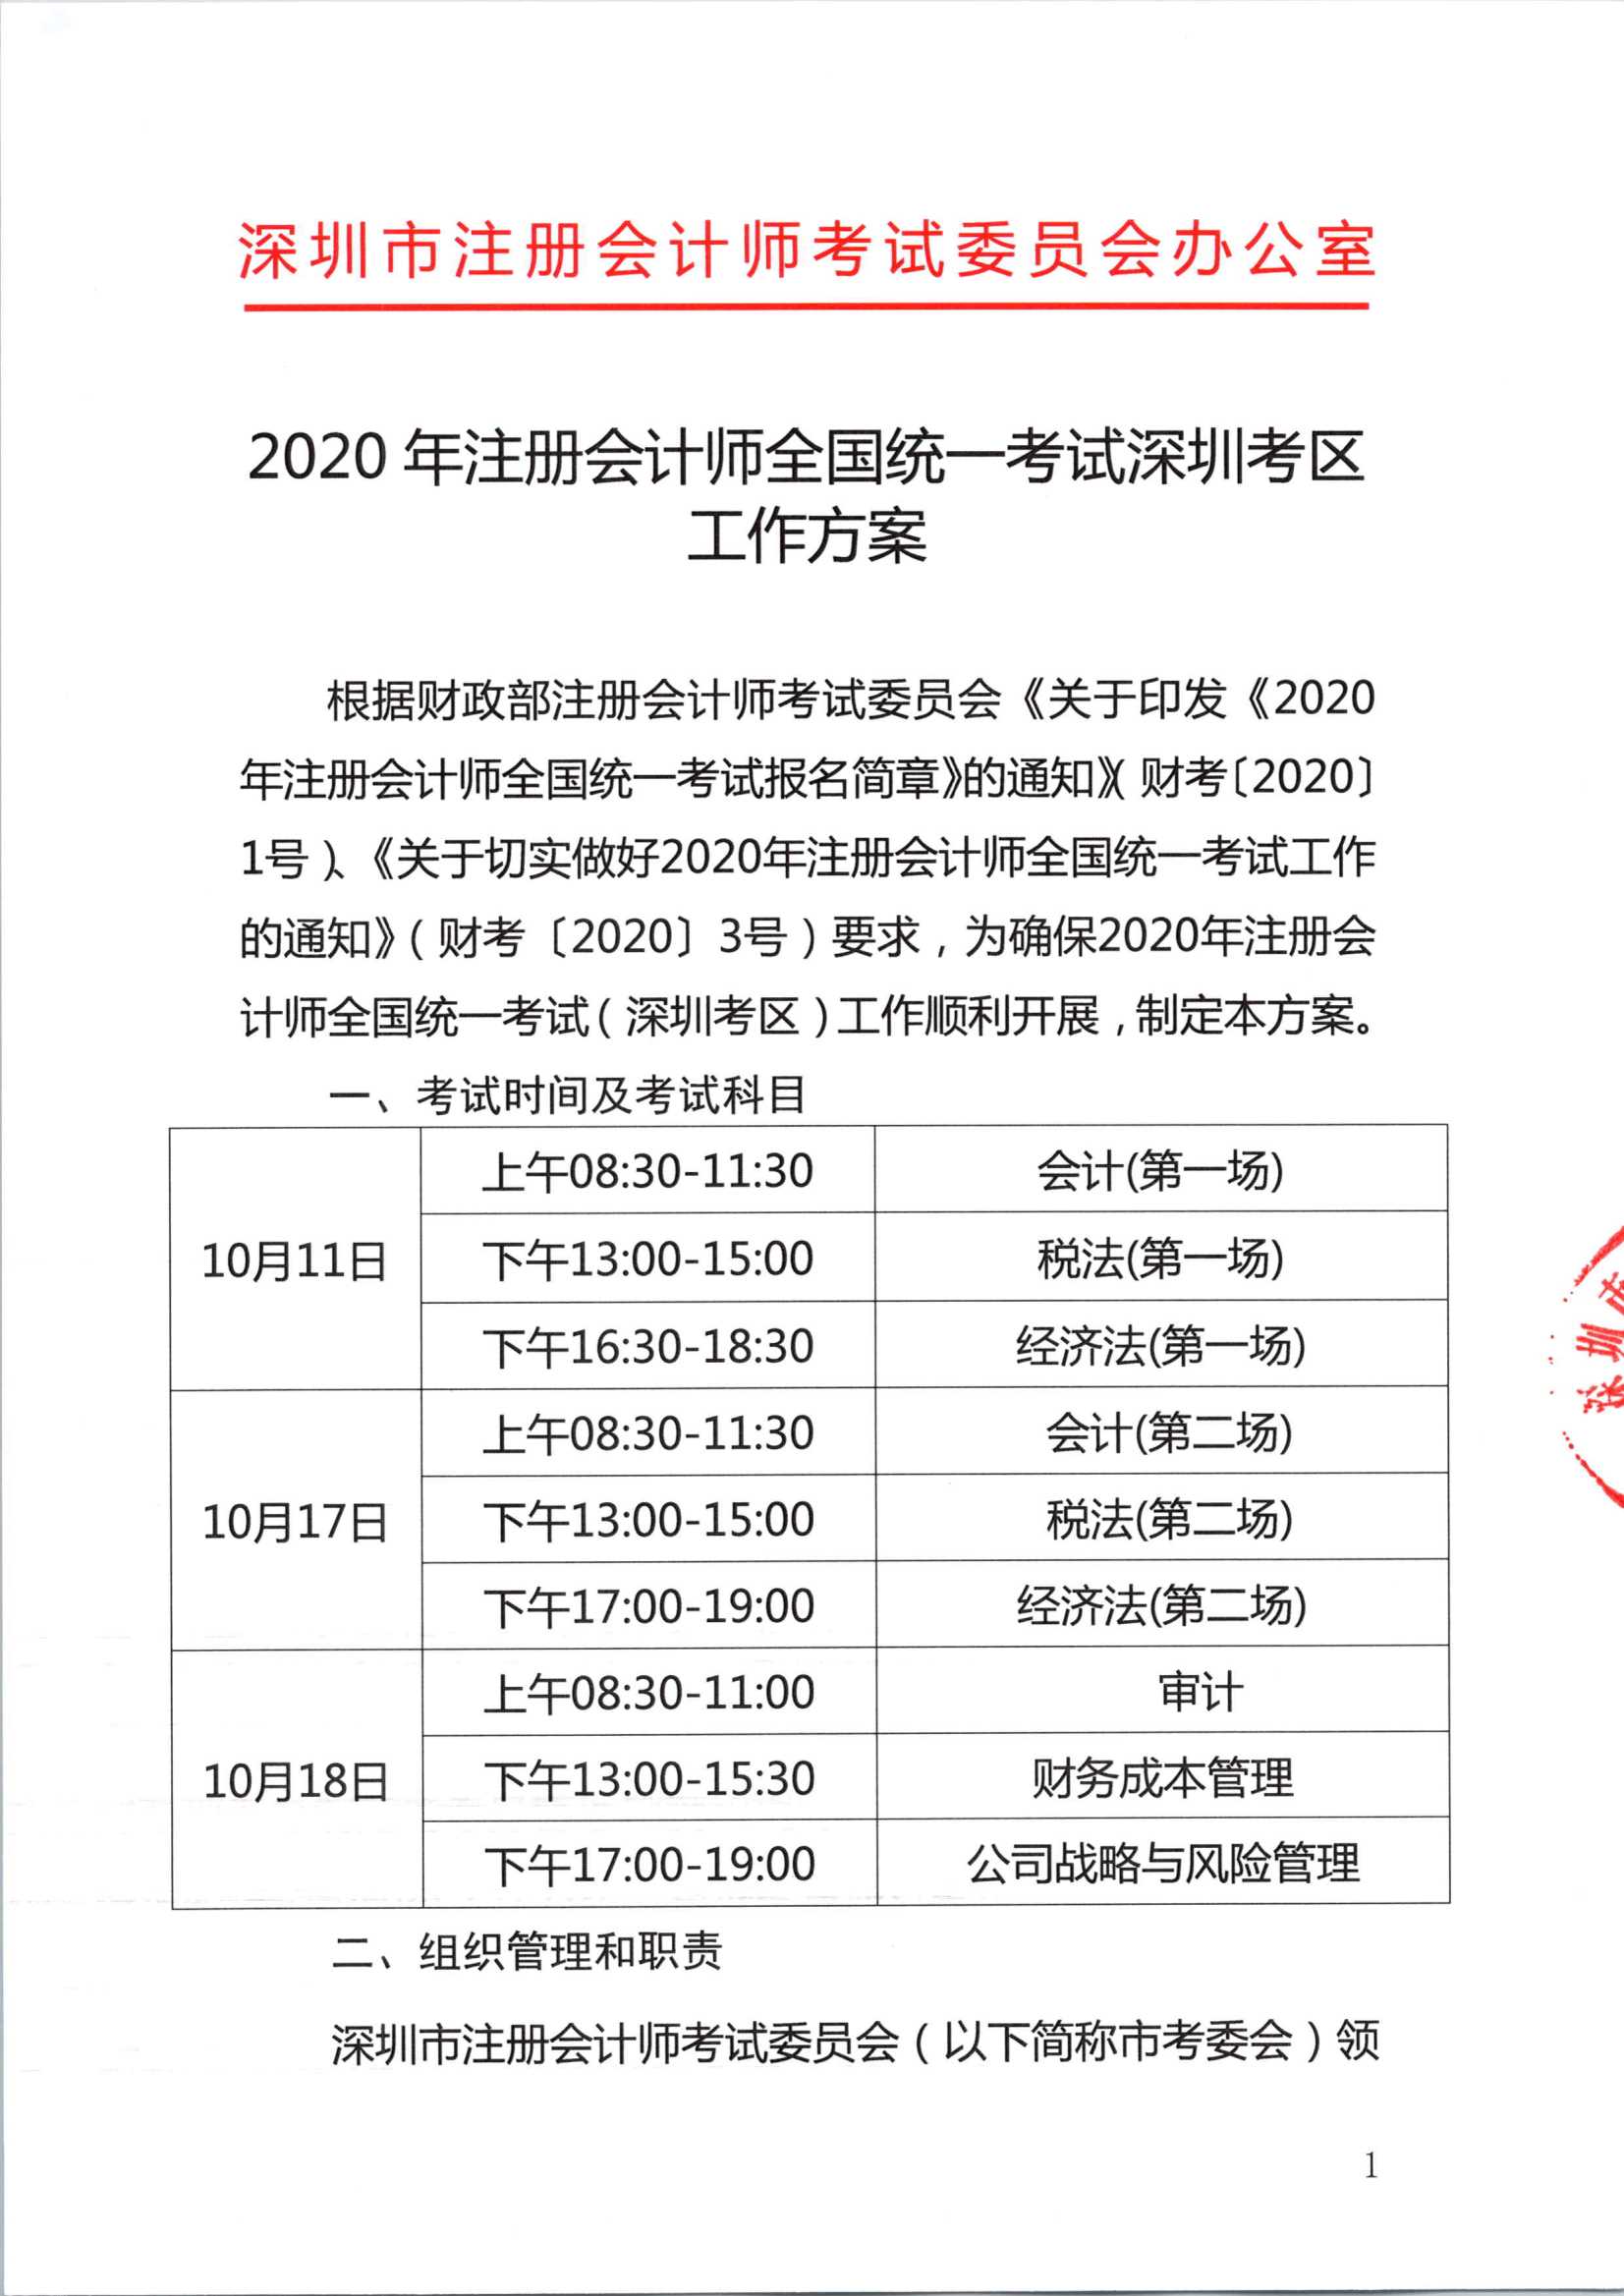 2020年注册会计师全国统一考试深圳考区工作方案_1.Png